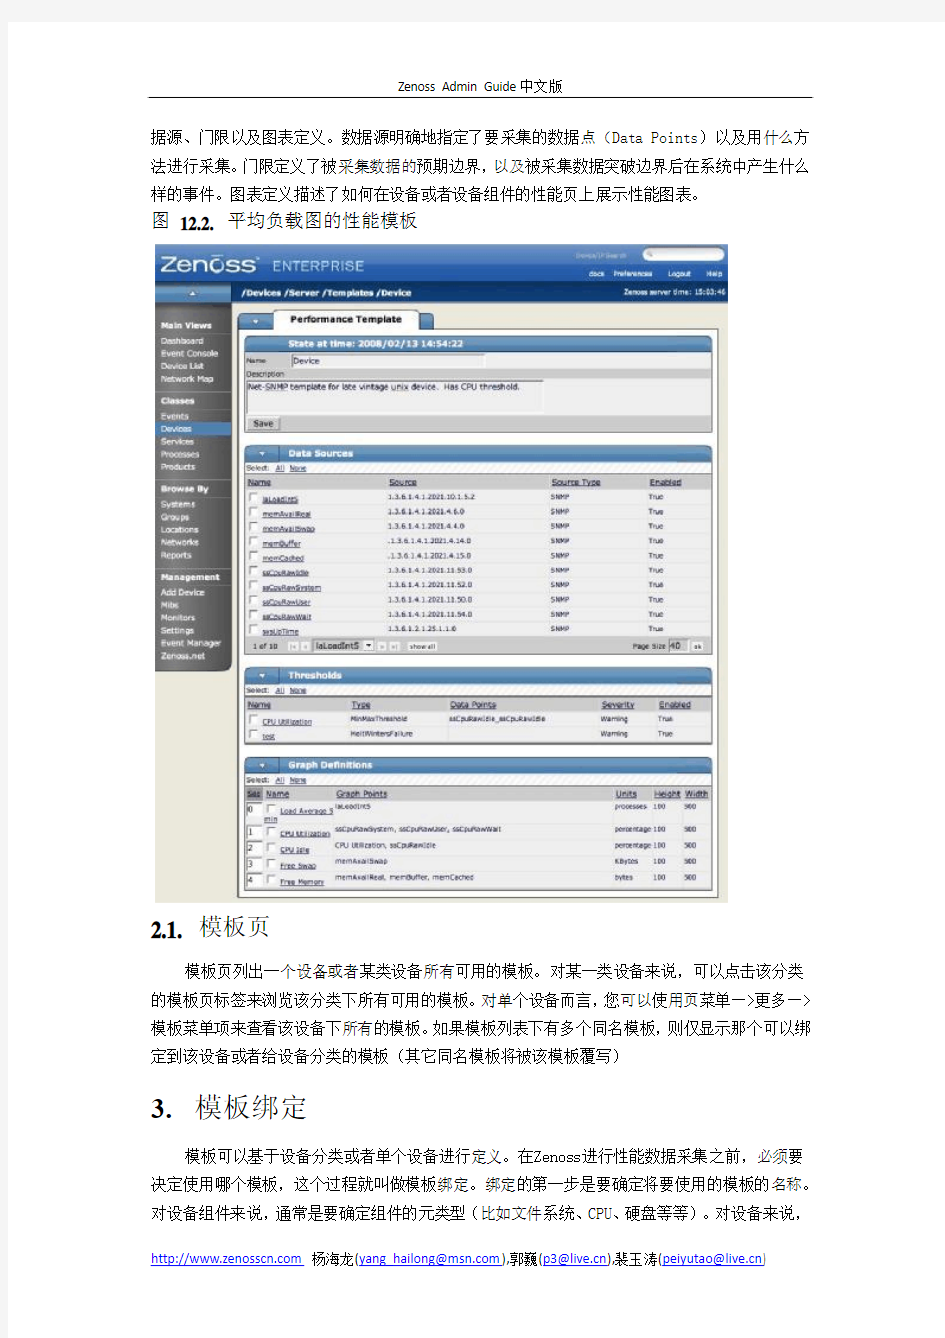 zenoss中文管理手册12.性能监视